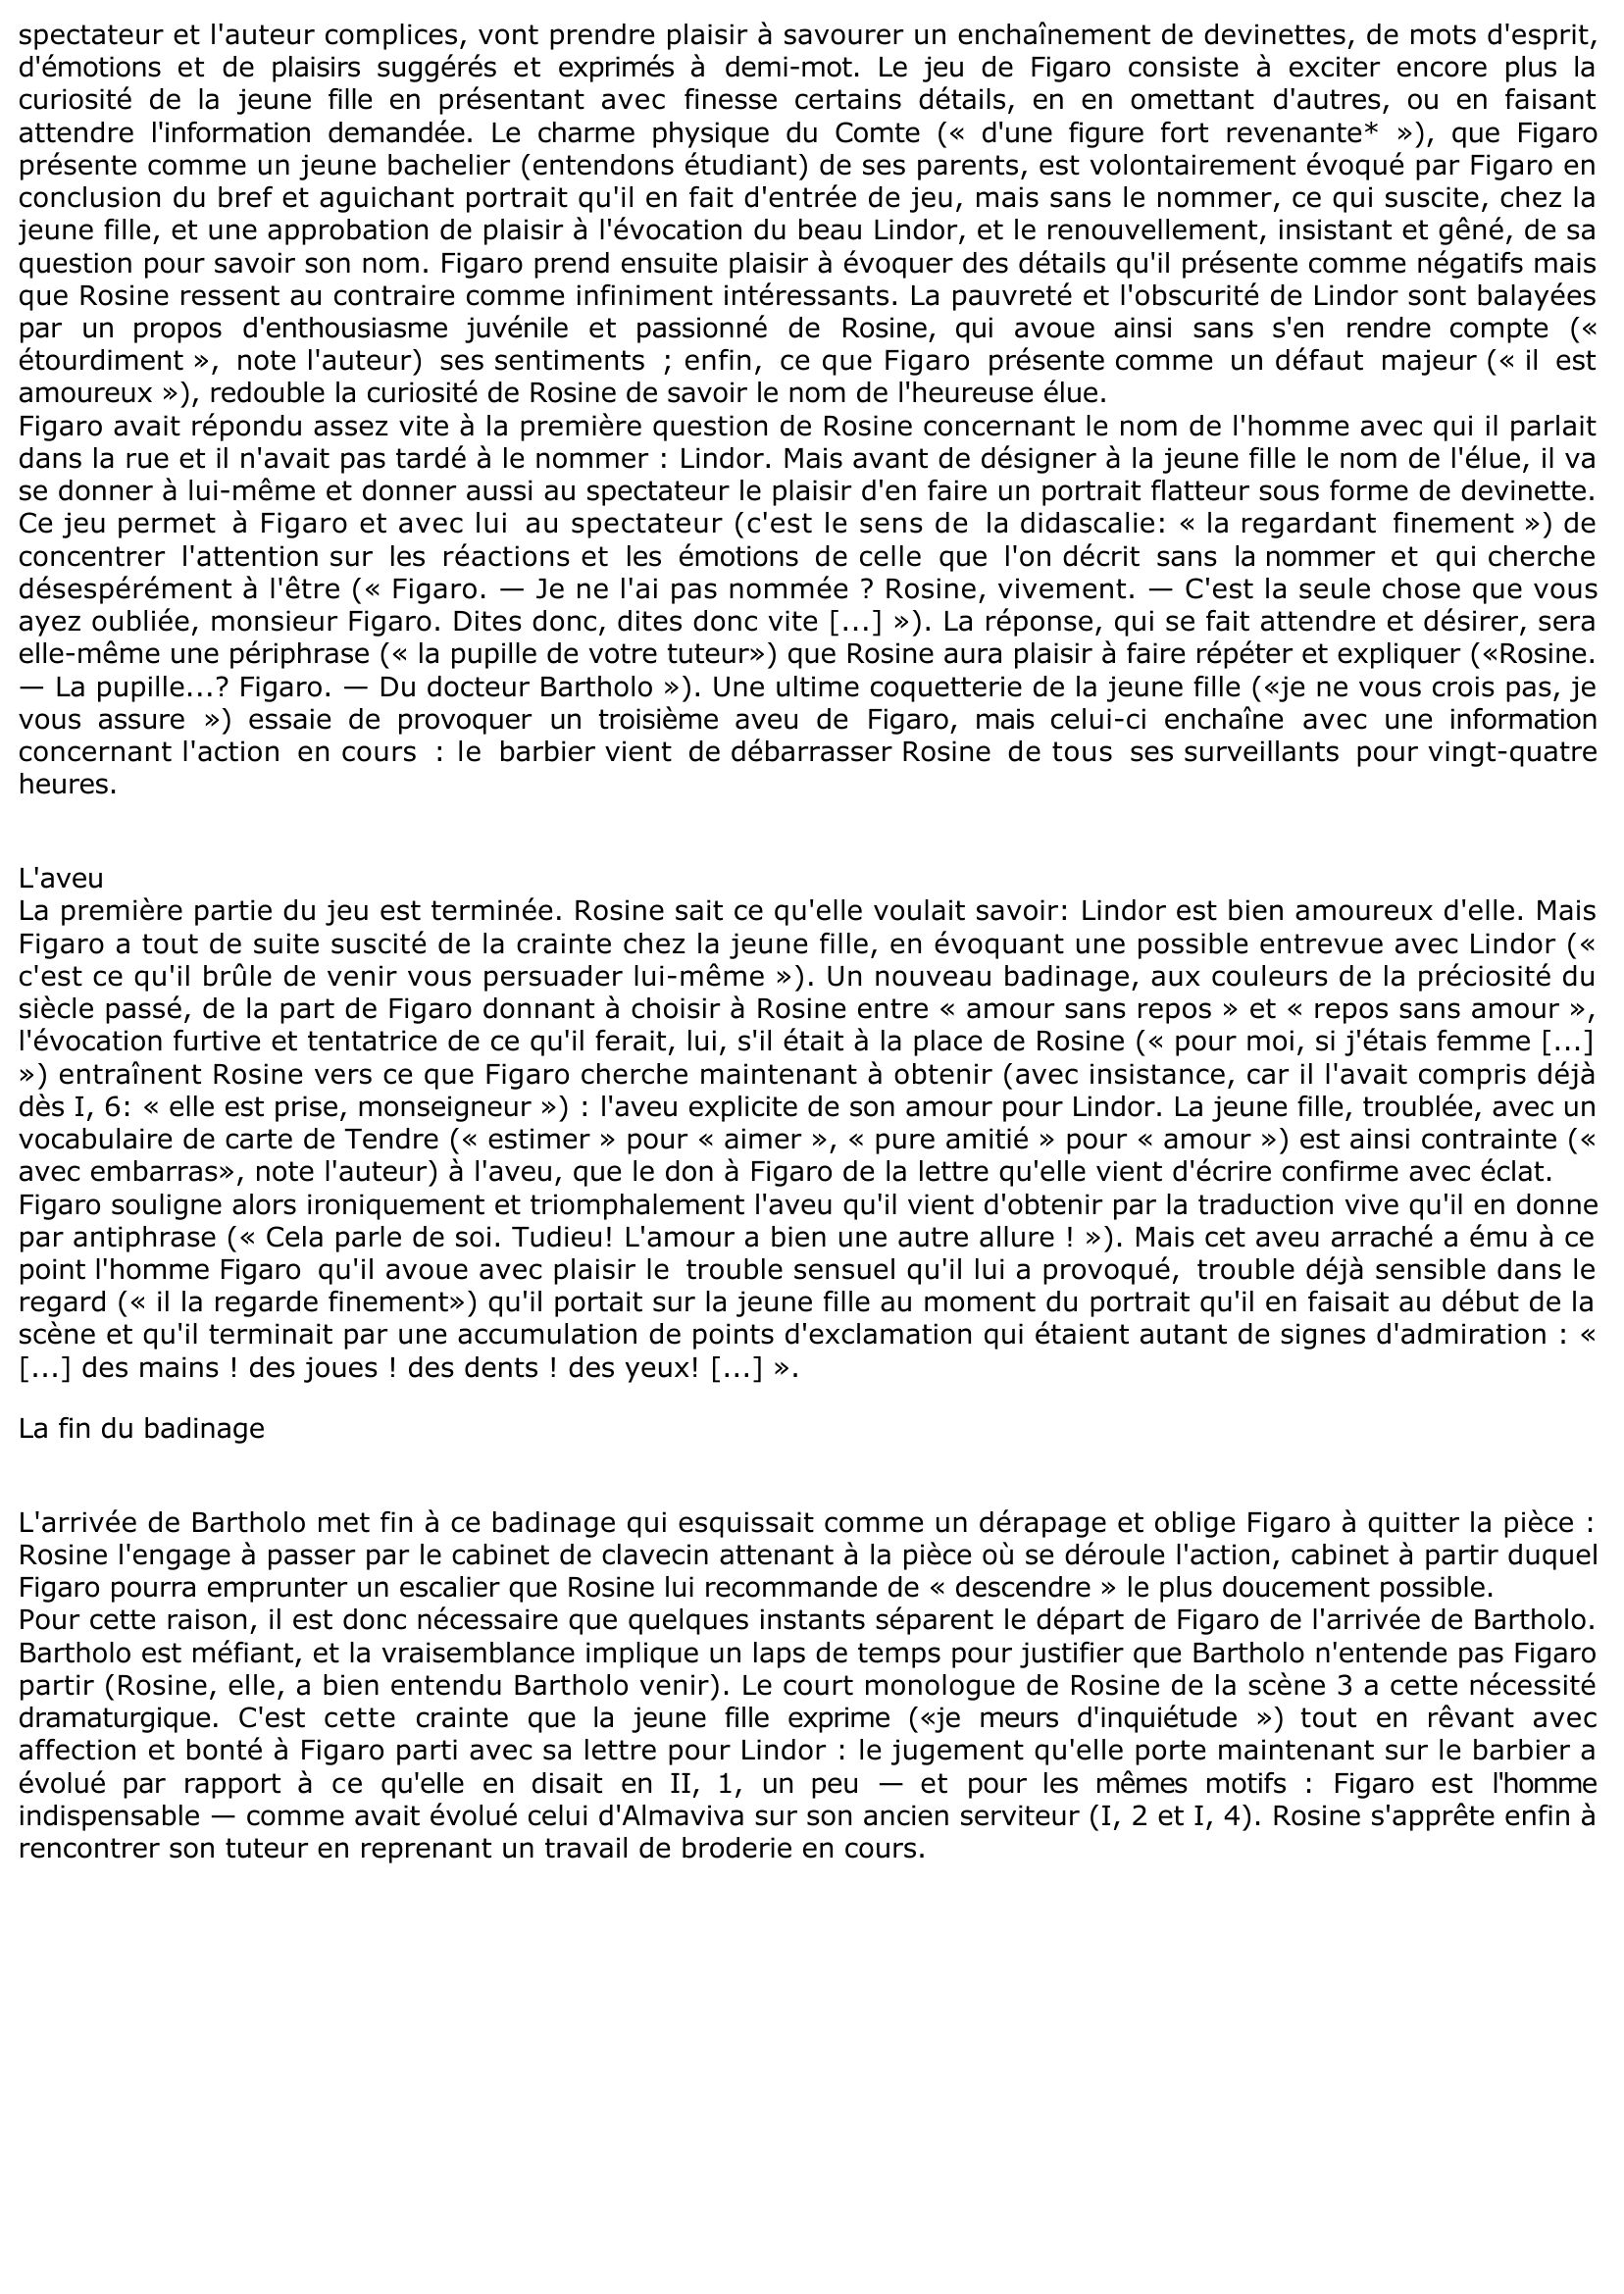 Prévisualisation du document ACTE II, SCÈNES 1-3 du "Barbier de Séville" de Beaumarchais (commentaire)